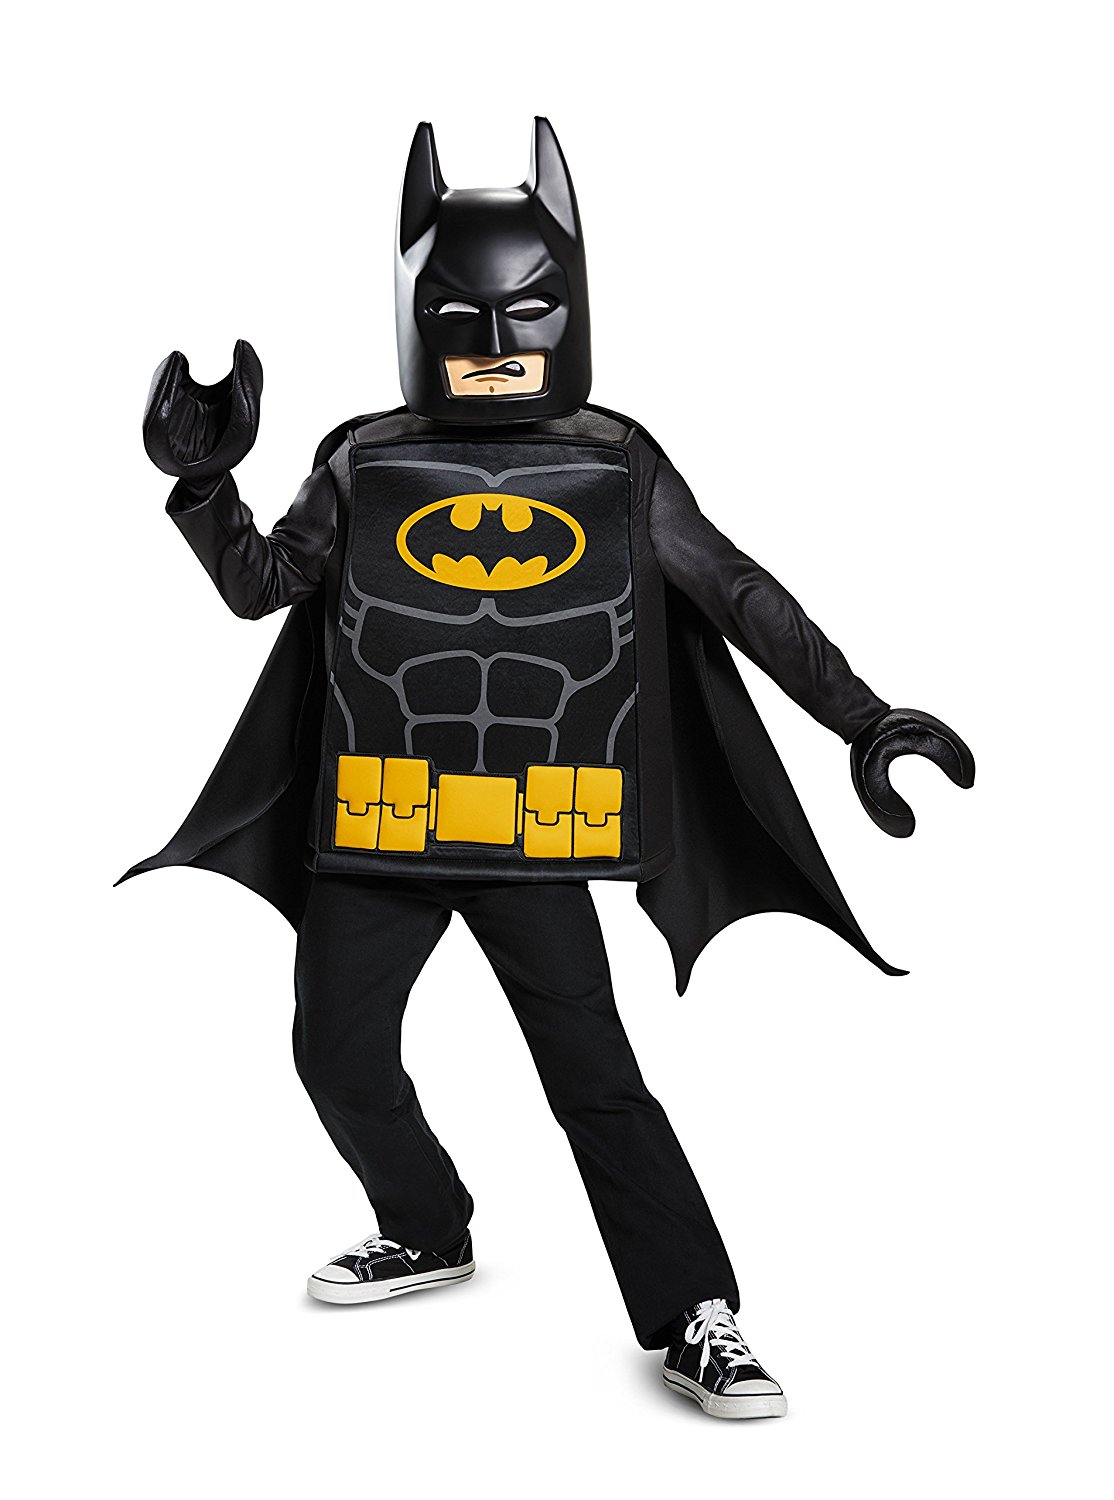 Batman, LEGO Batman, kids costume